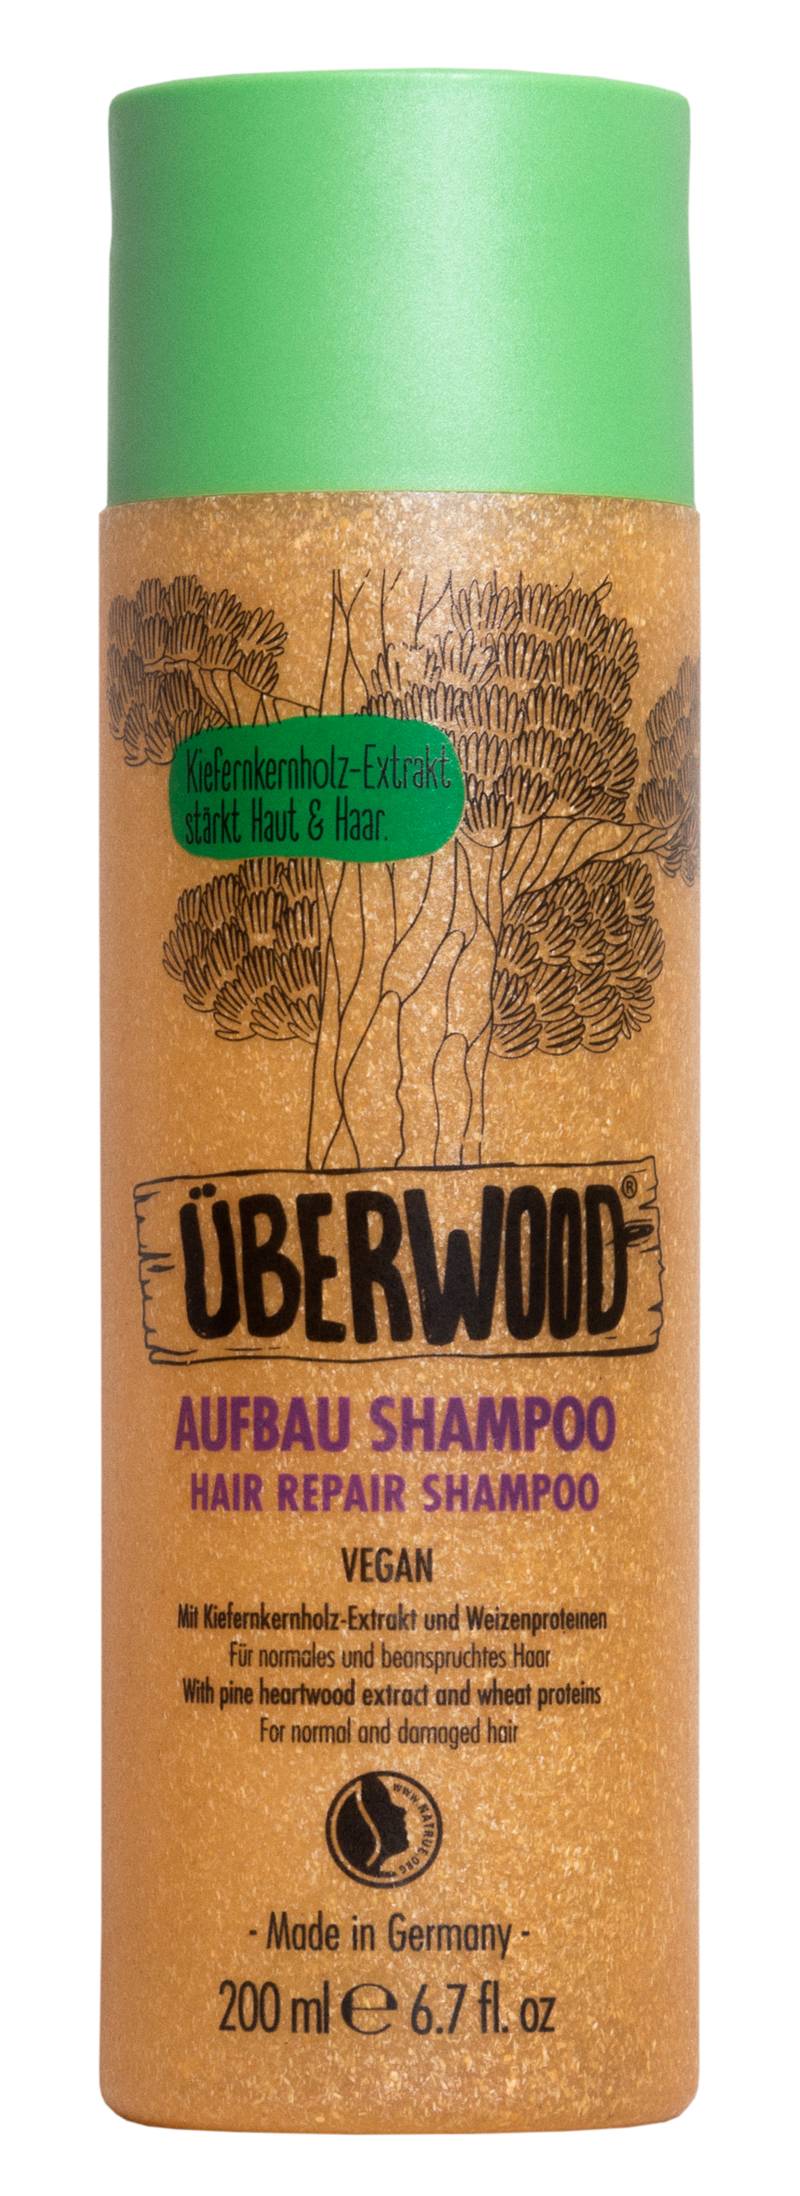 Sampon pentru par normal sau deteriorat, hair repair, 200ml - uberwood